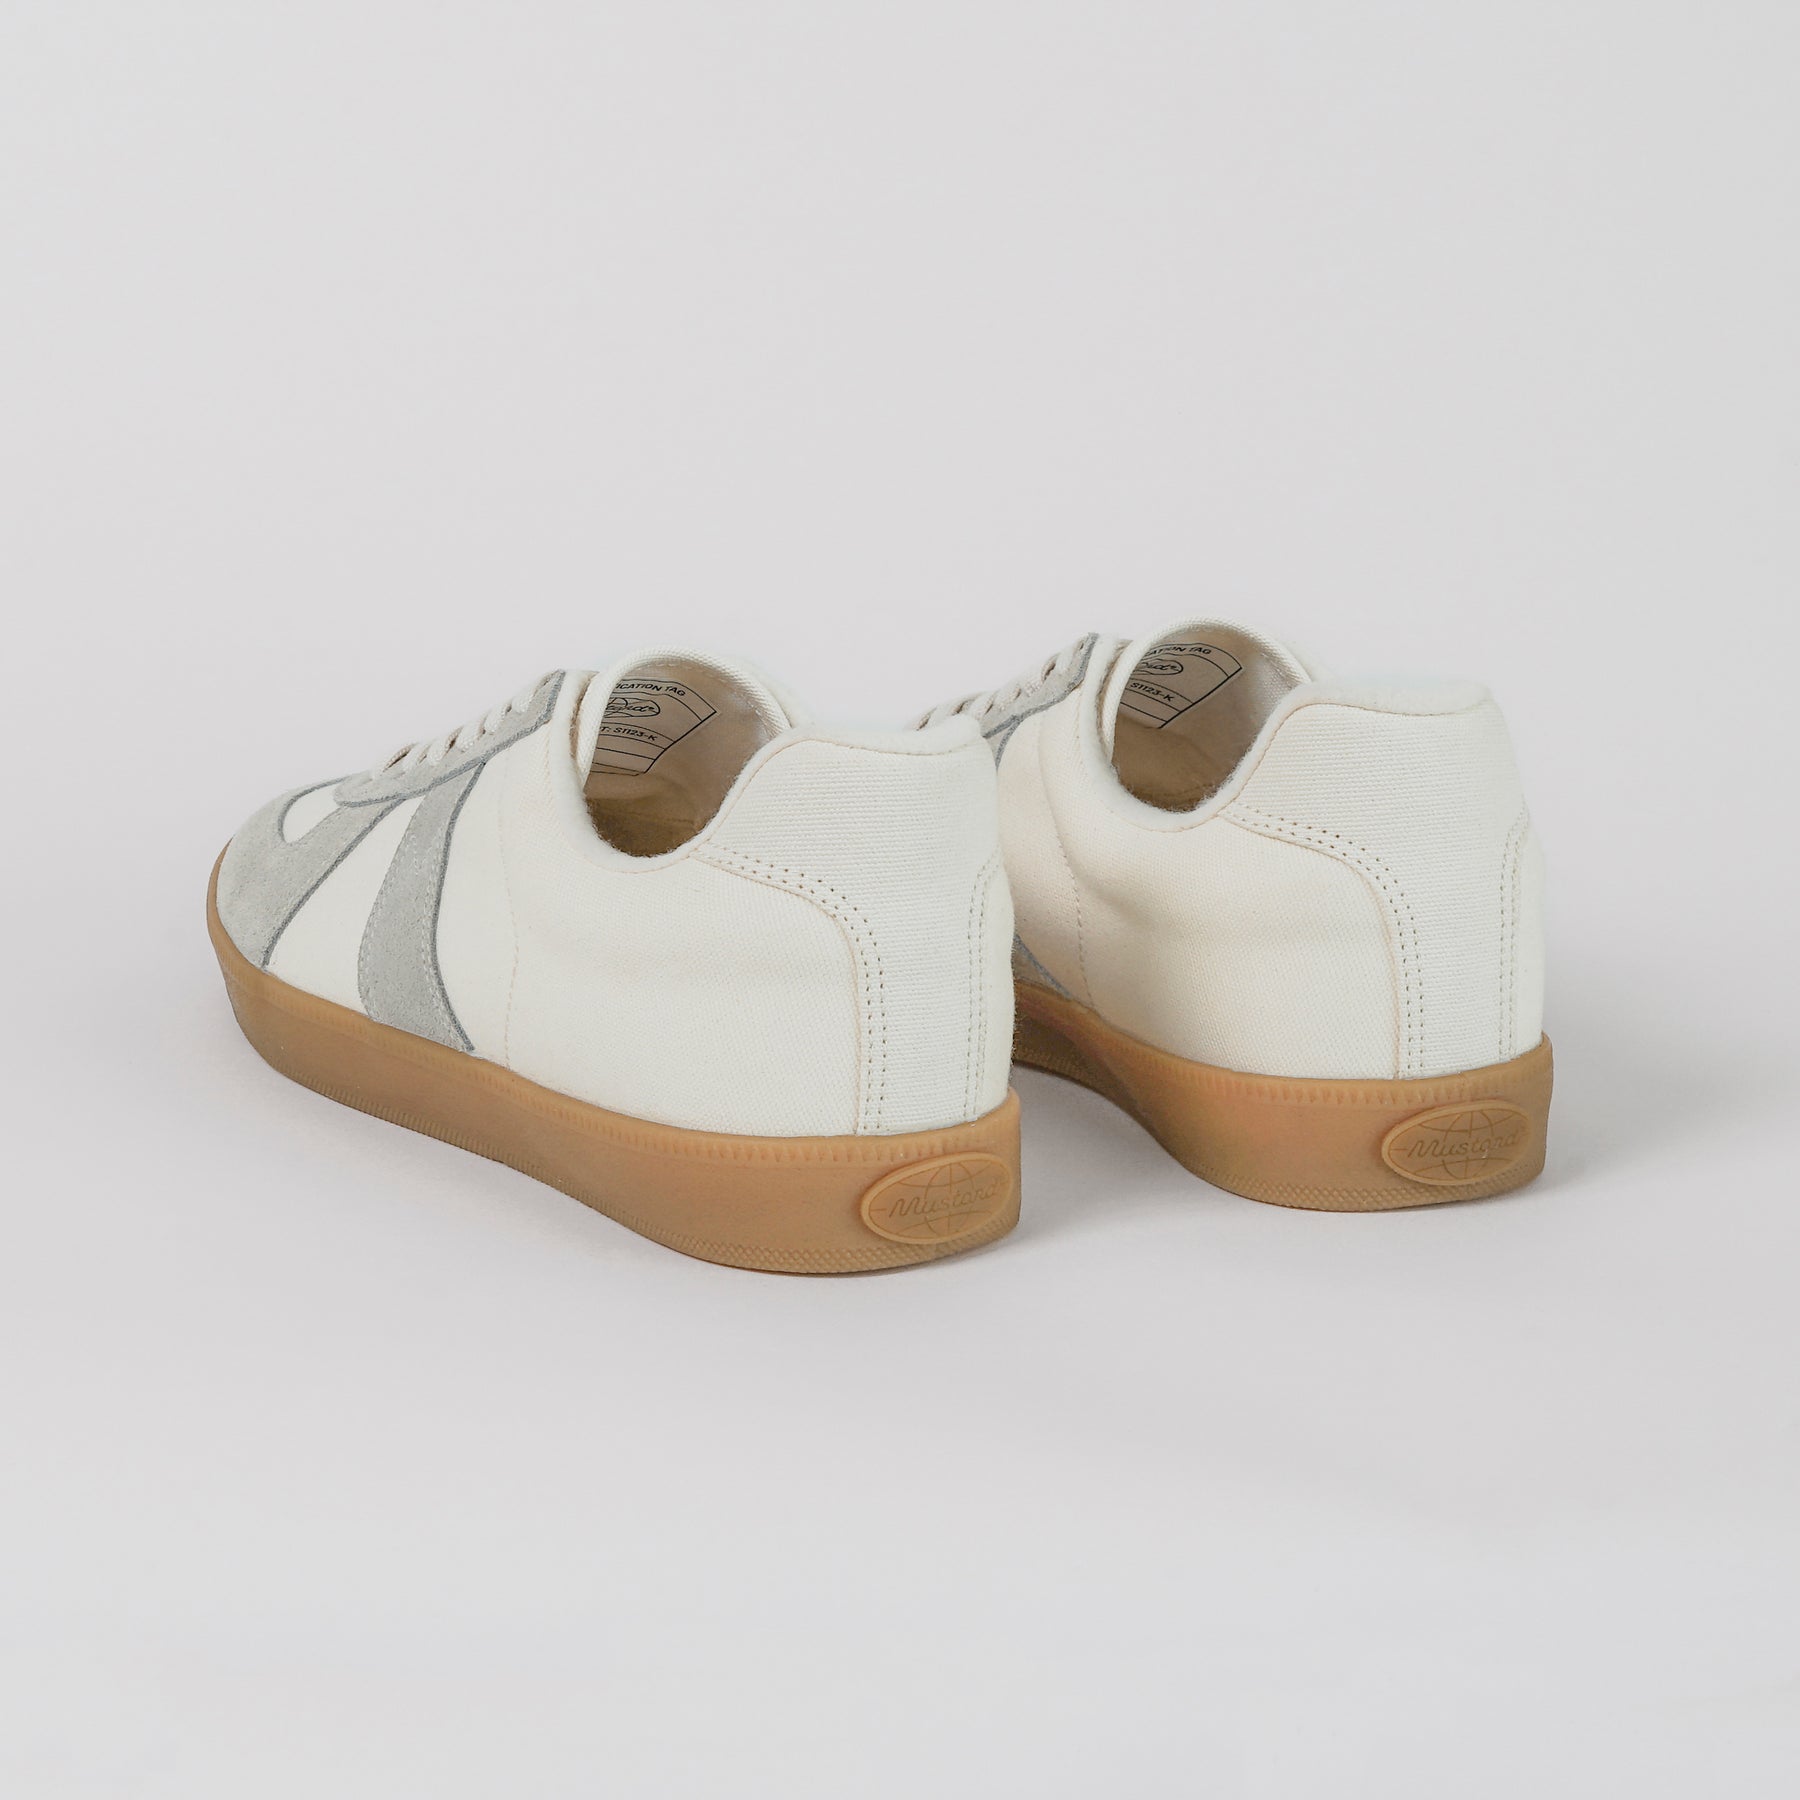 GAT White/OG – Mustard Sneakers